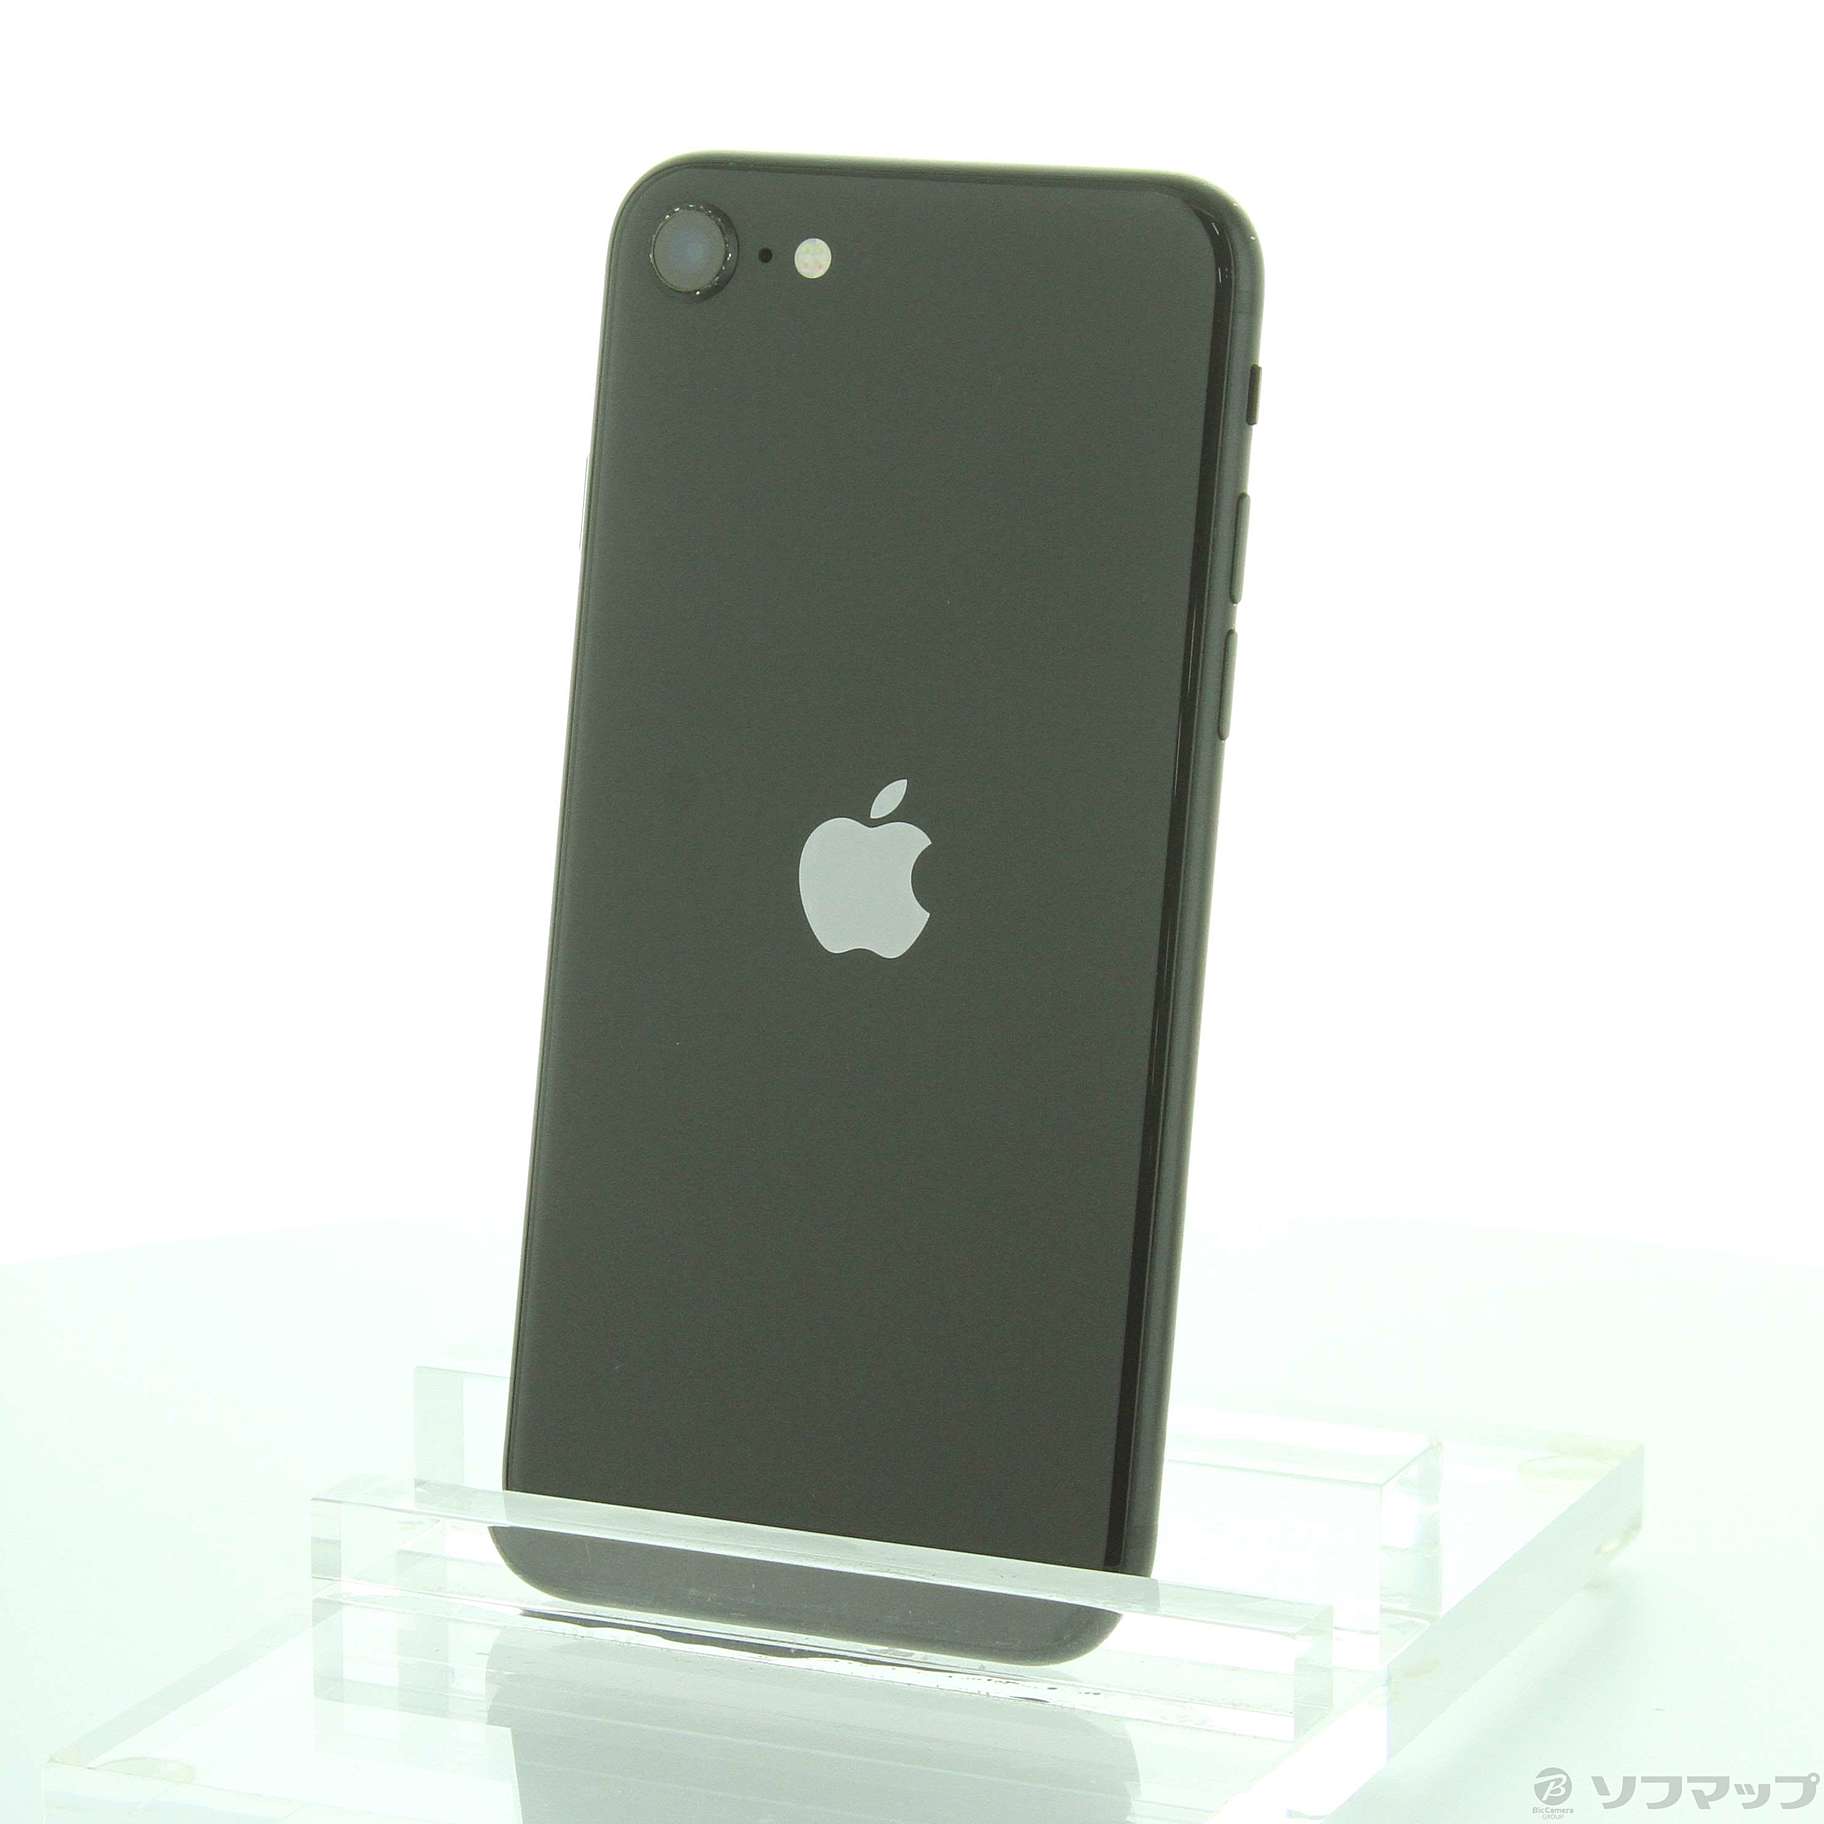 iPhone SE 第2世代 64GB ブラック SIMフリー